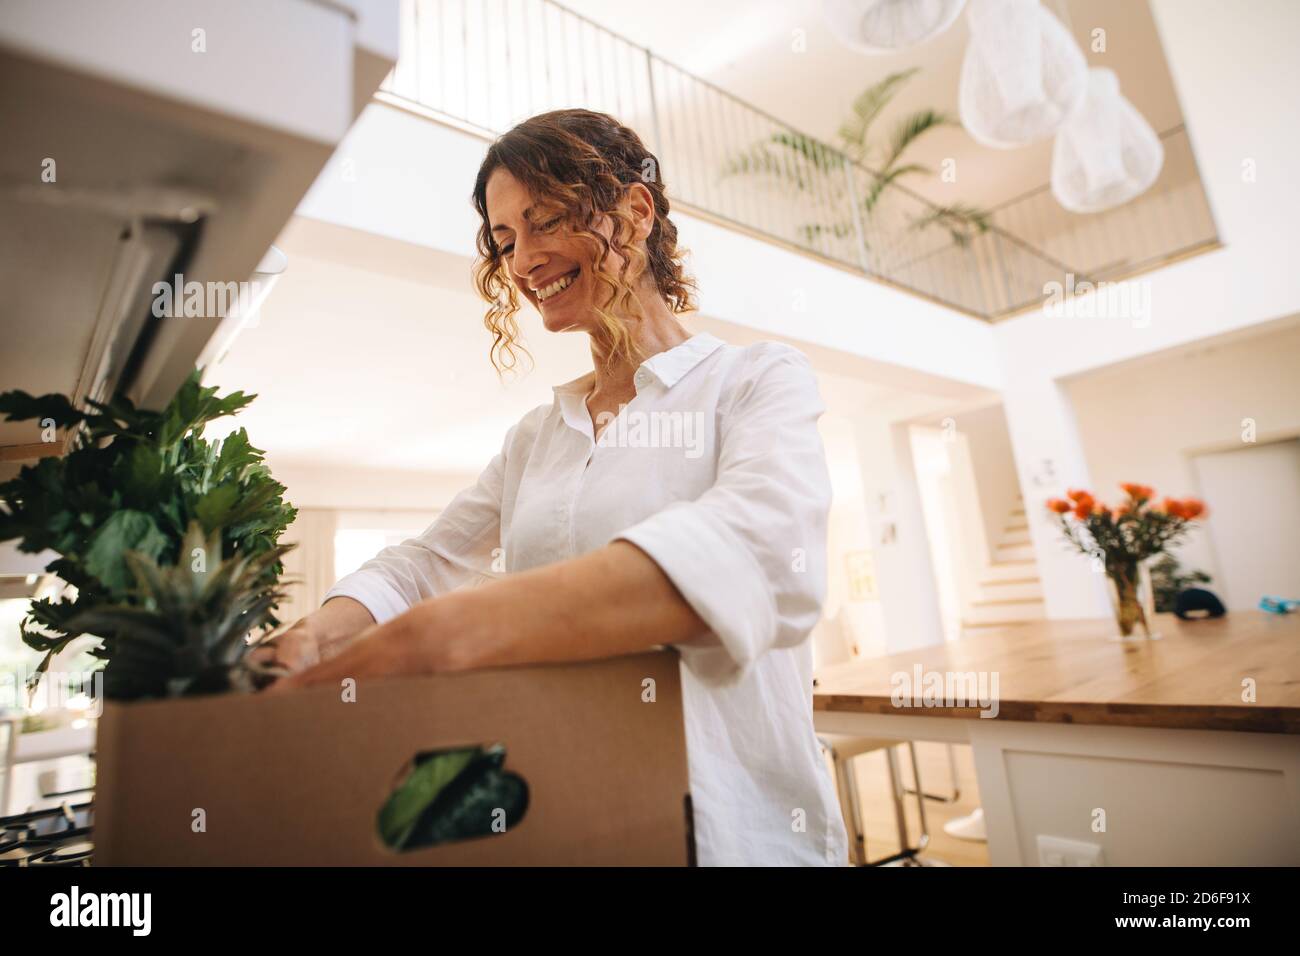 Lächelnde Frau, die in der Kiste mit Lebensmitteln in ihrer Küche schaut. Frau steht in der Küche und überprüft die Früchte und Gemüse in der Lieferbox. Stockfoto